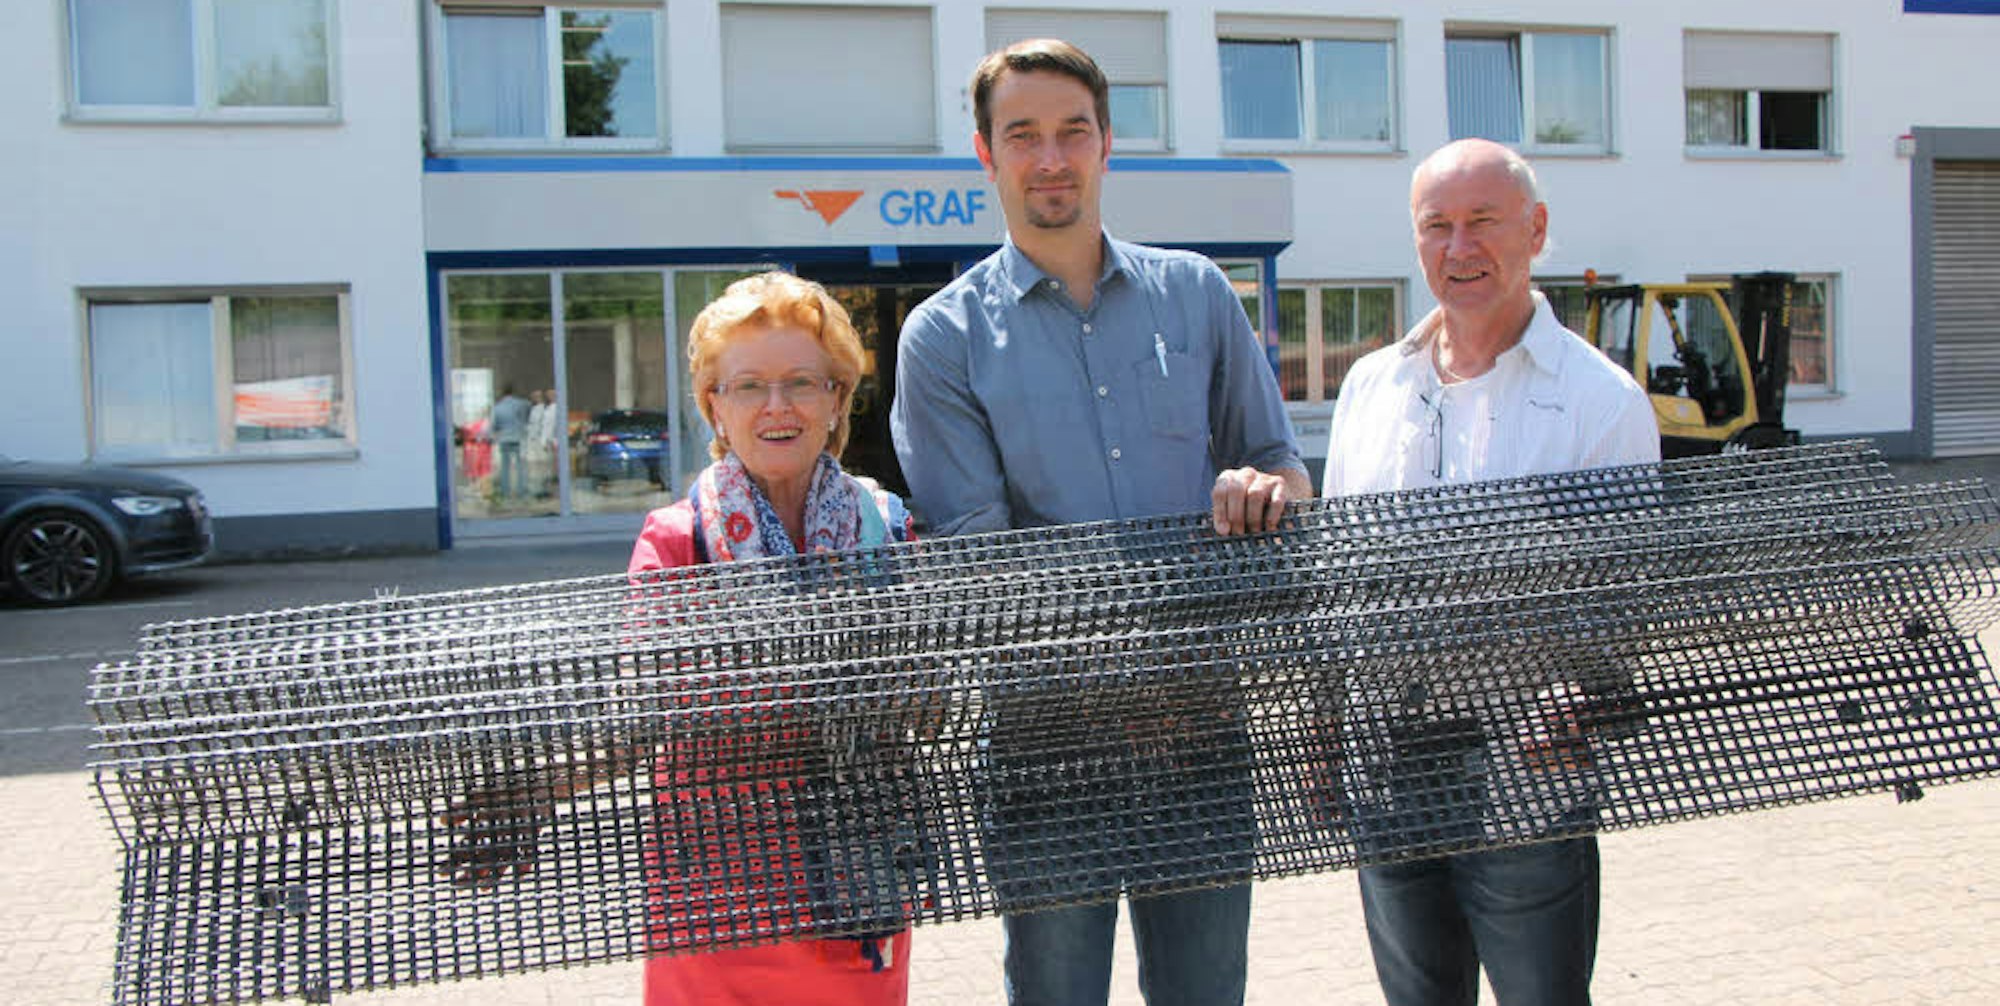 Firmenchefin Jutta Graf zeigt zusammen mit Prokurist Volker Salentin und Verkaufsleiter Harald Nauroschat das Kohlenstoffprodukt Carbon, das sie leicht tragen können.